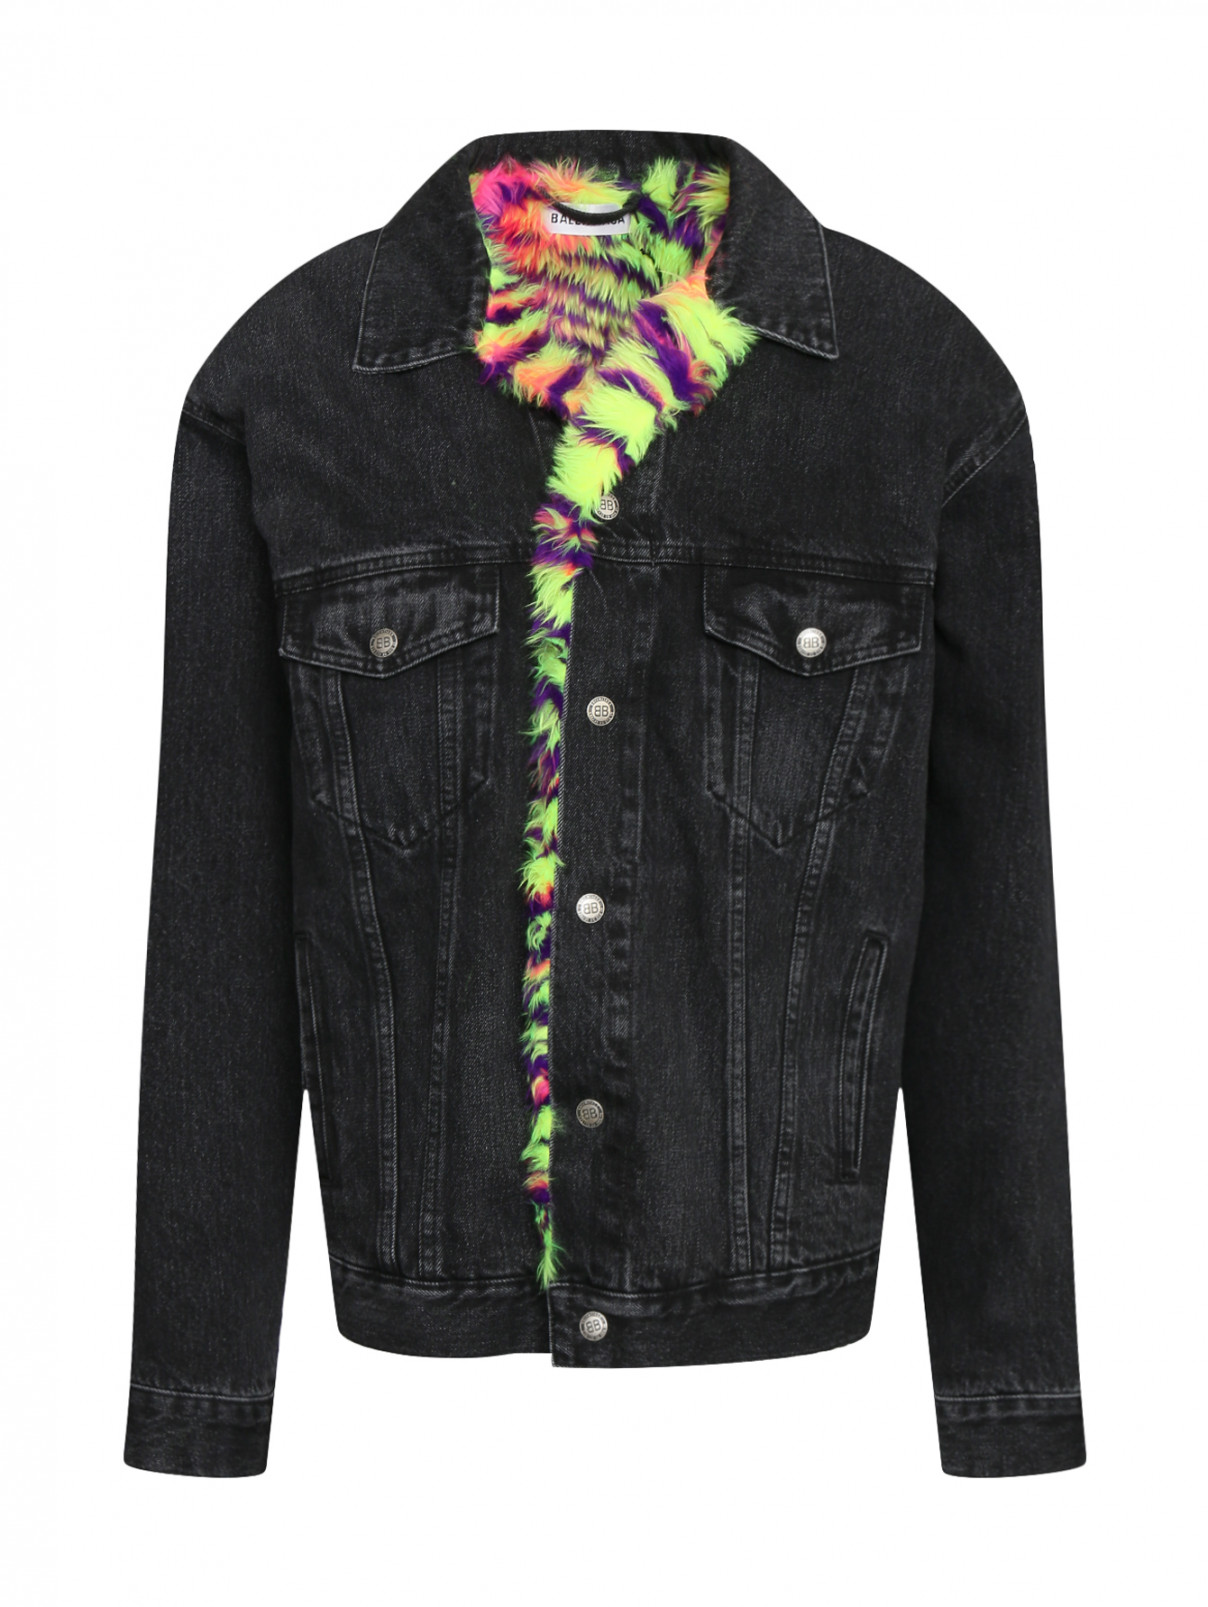 Куртка из хлопка с контрастной подкладкой из искусственного меха Balenciaga  –  Общий вид  – Цвет:  Серый